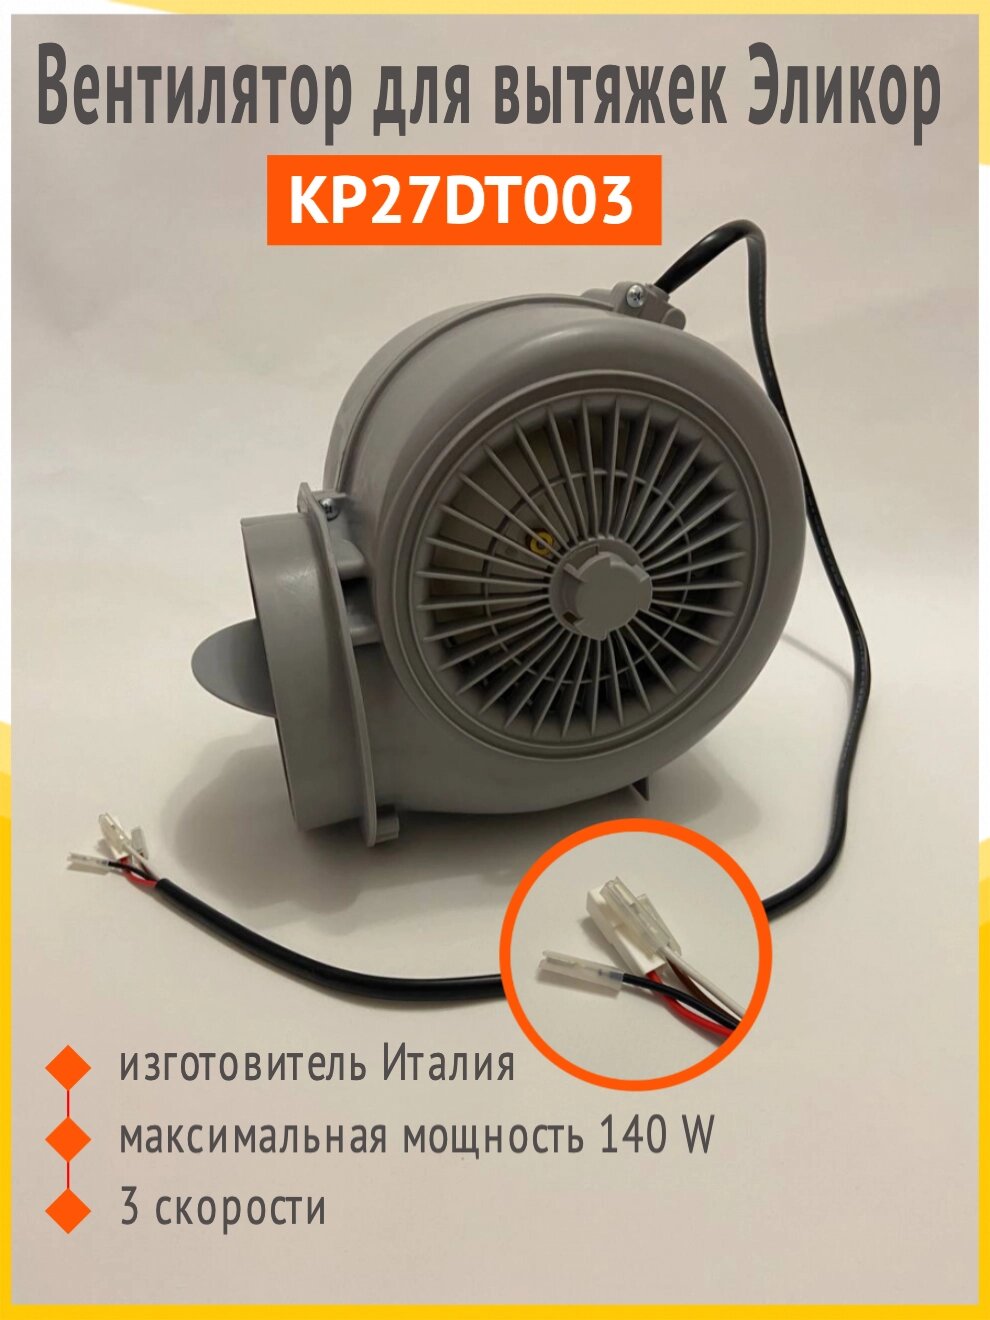 KP27DT003 двигатель, вентилятор вытяжка Elikor, Faber, Franke от компании Сергей Спицын - фото 1